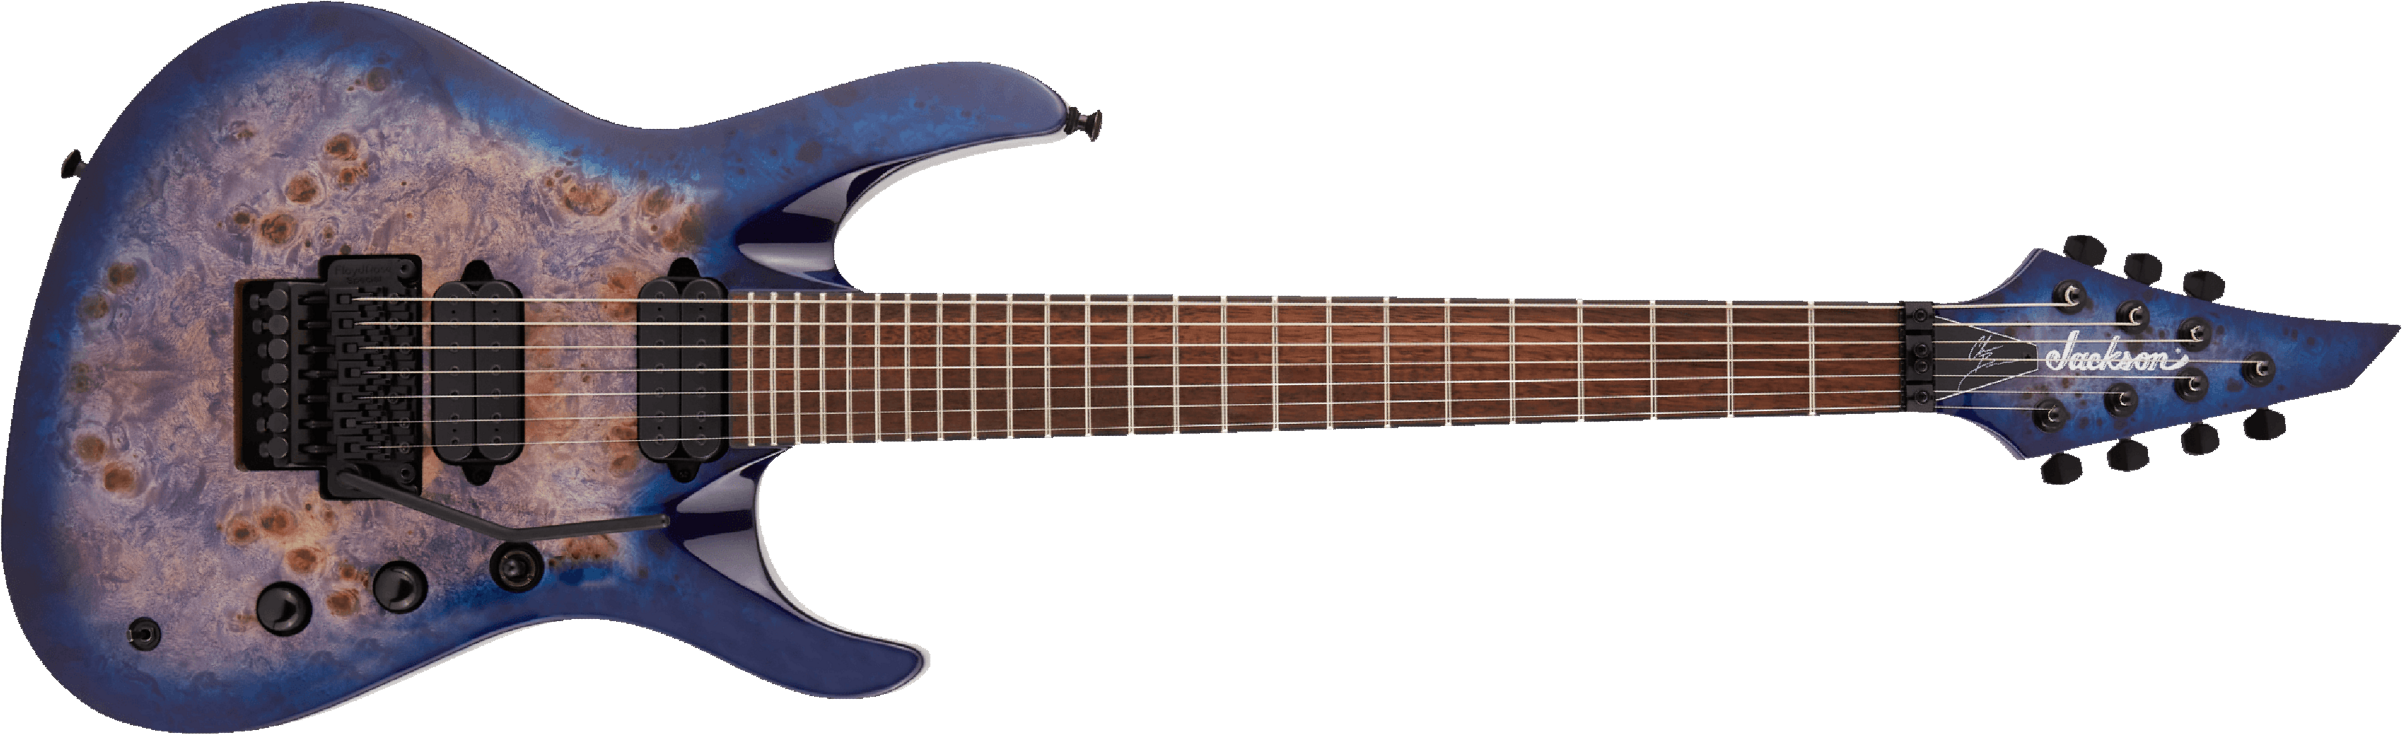 Jackson Chris Broderick Soloist 7 Pro Signature 2h Dimarzio Fr Lau - Trans Blue Poplar - 7 string electric guitar - Main picture